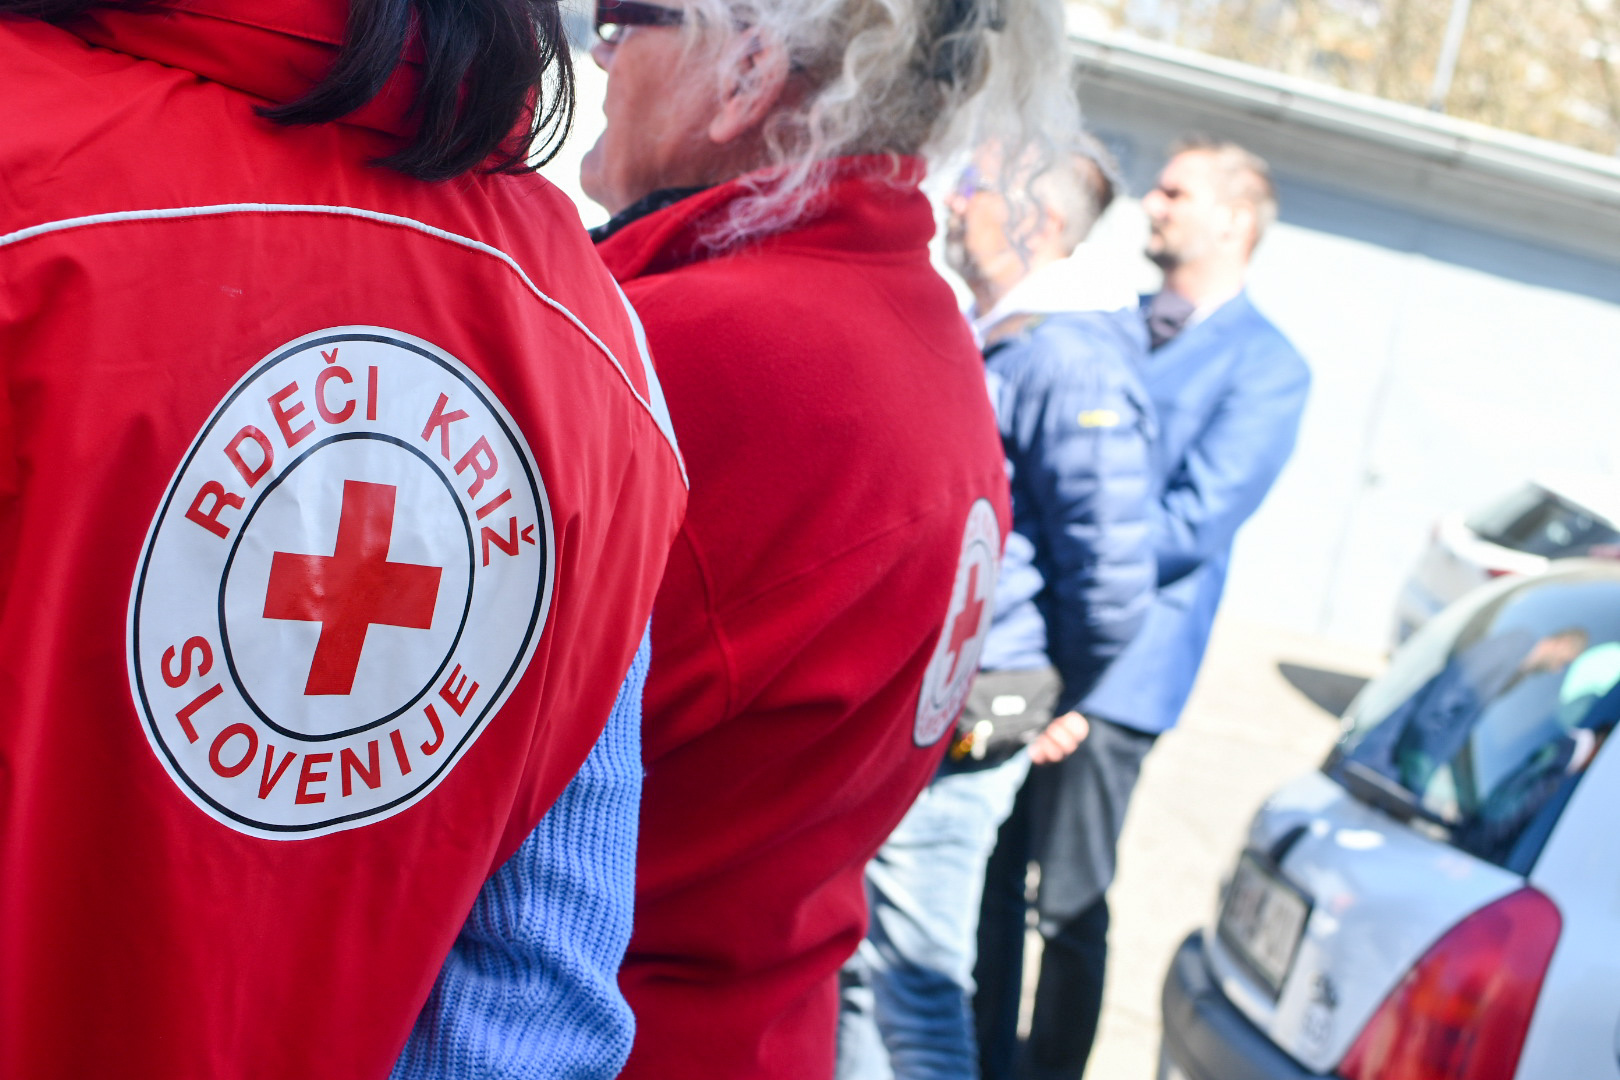 DNEVNA: Vedno več ljudi, ki prosijo za pomoč, Rdeči križ ne zmore več